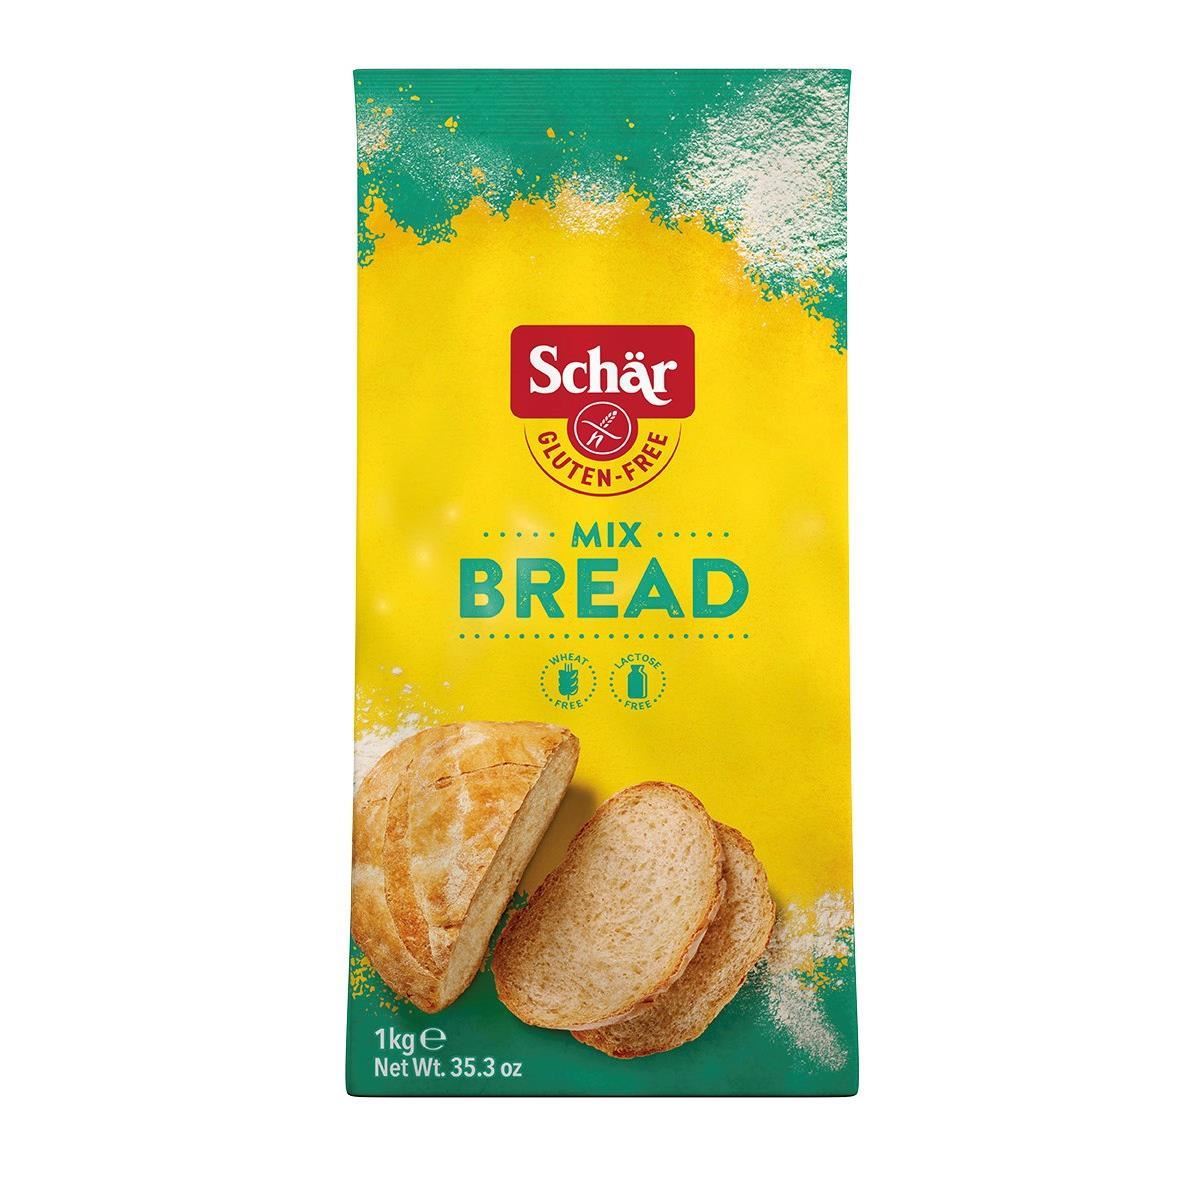 Mix faina fara gluten Mix Bread (Mix B) pentru paine 1kg Schar